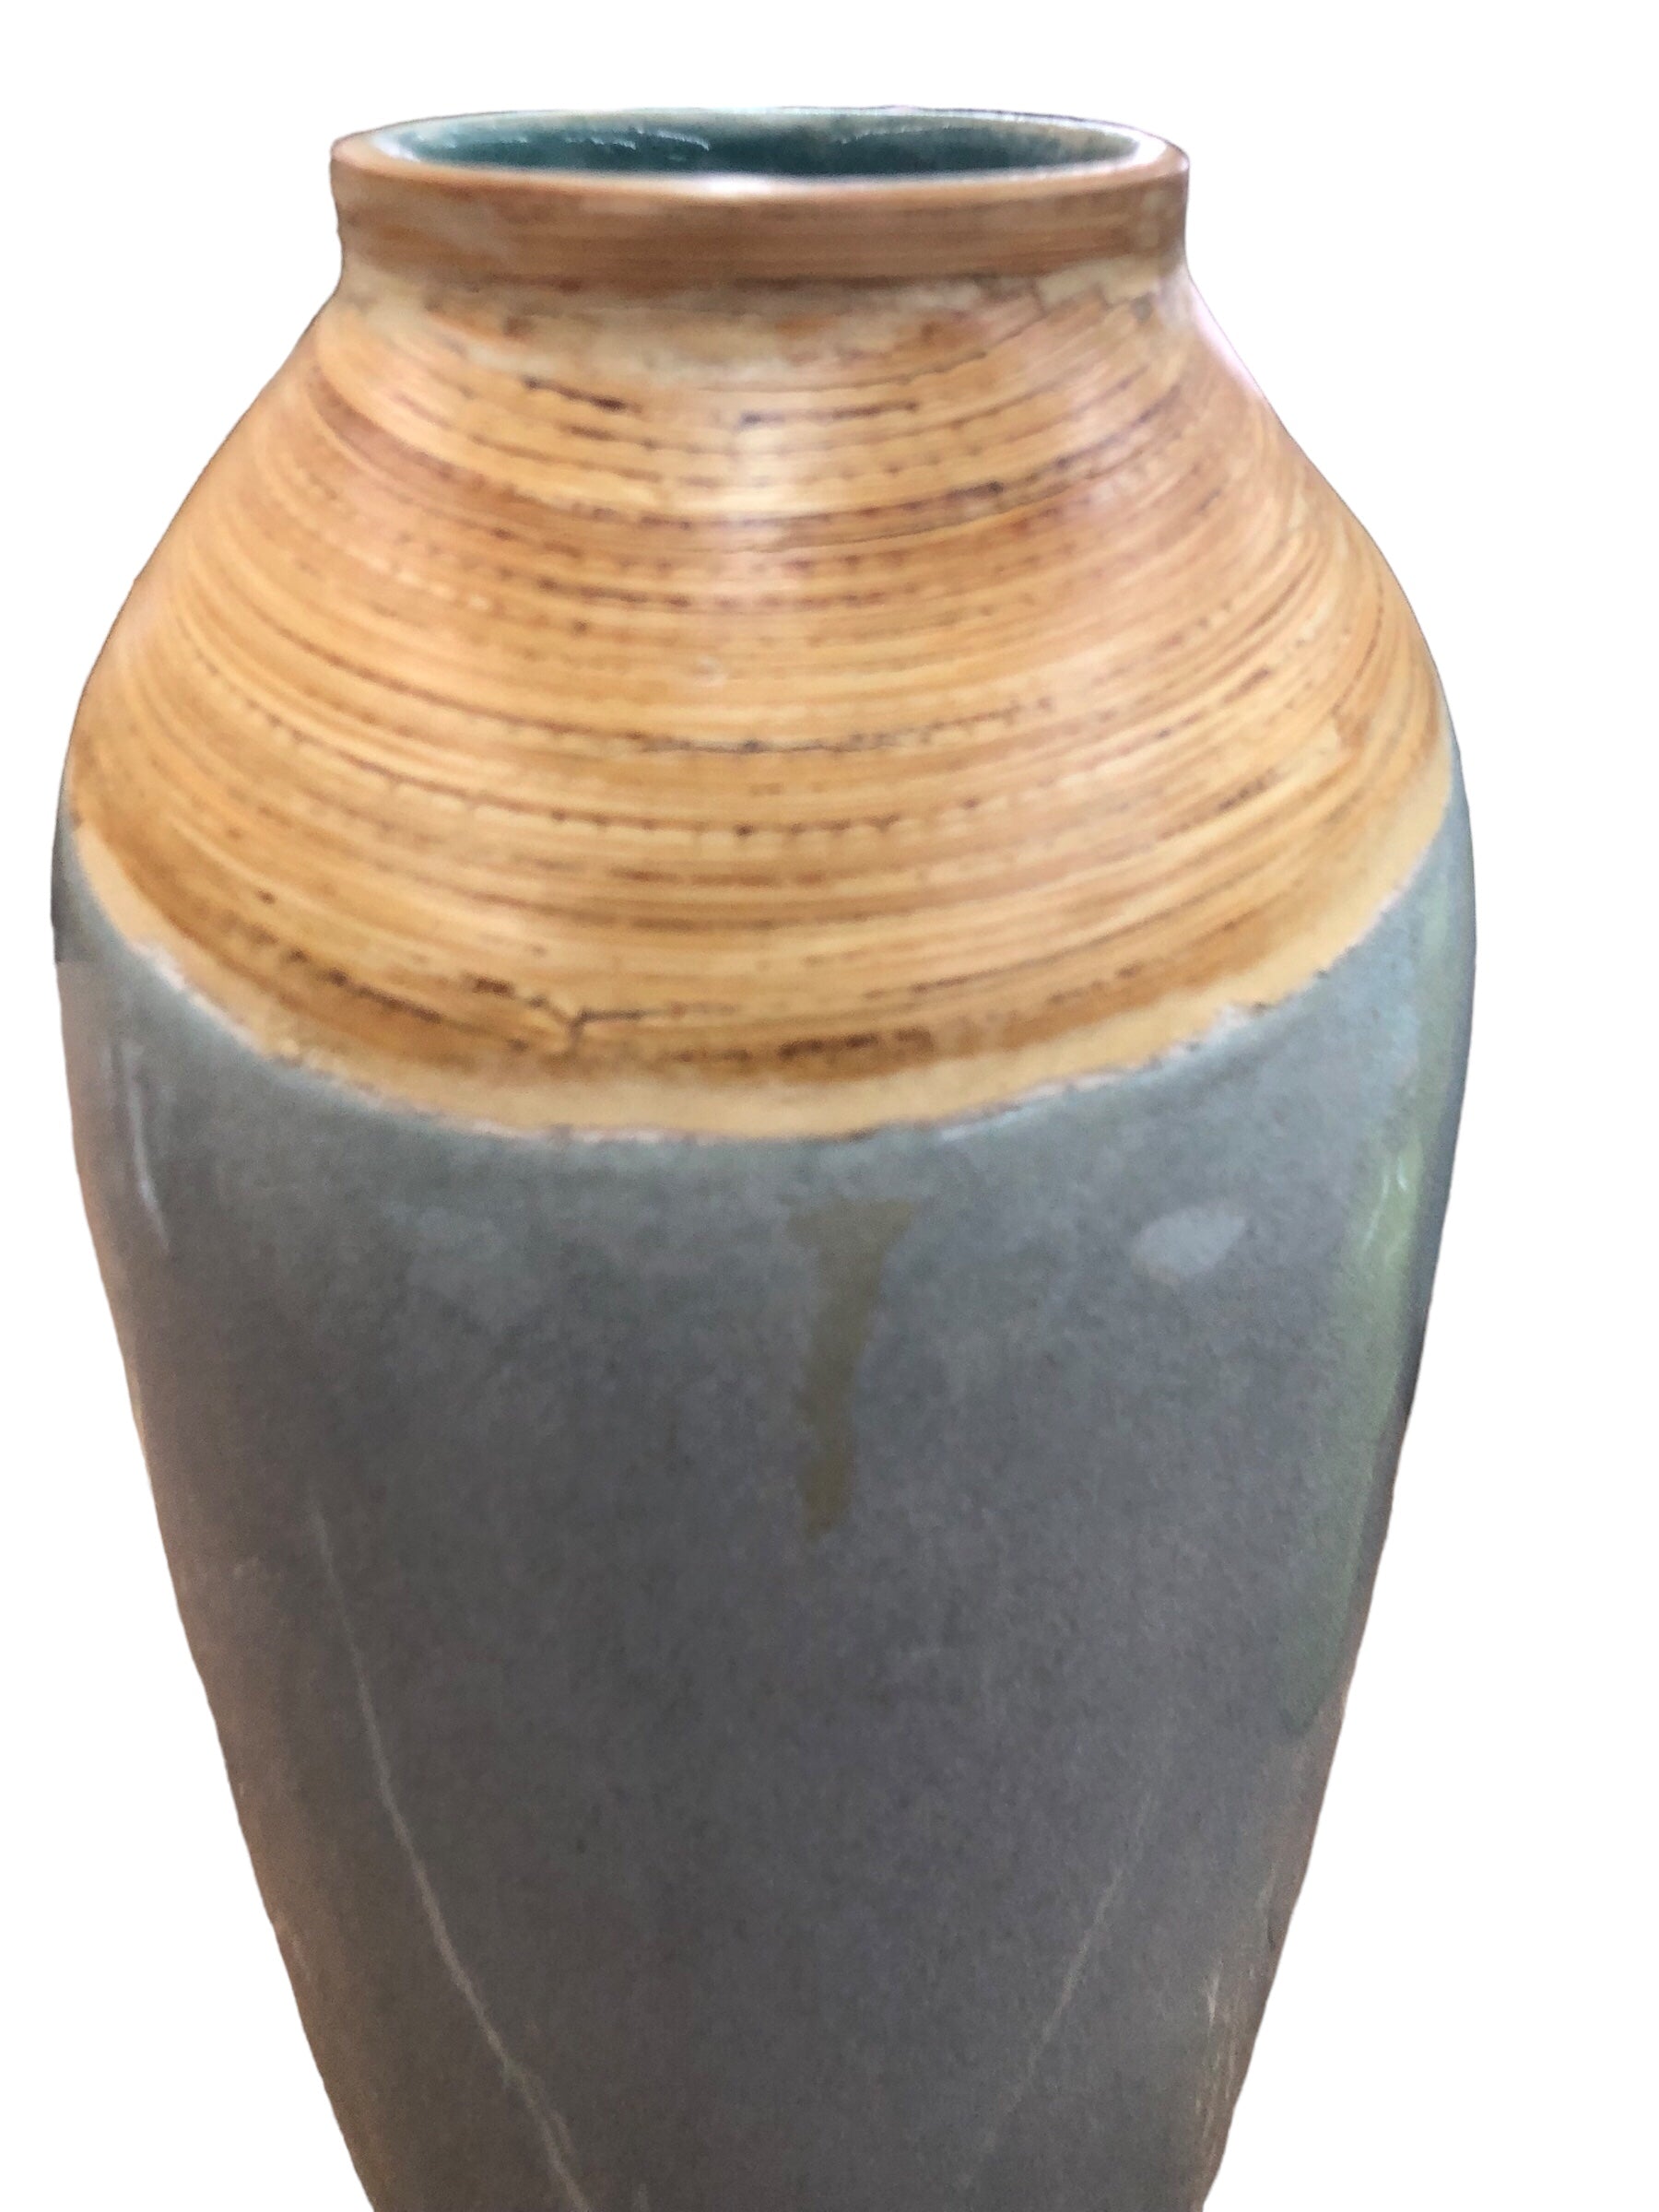 Ceramic vase light blue/grey and beige top